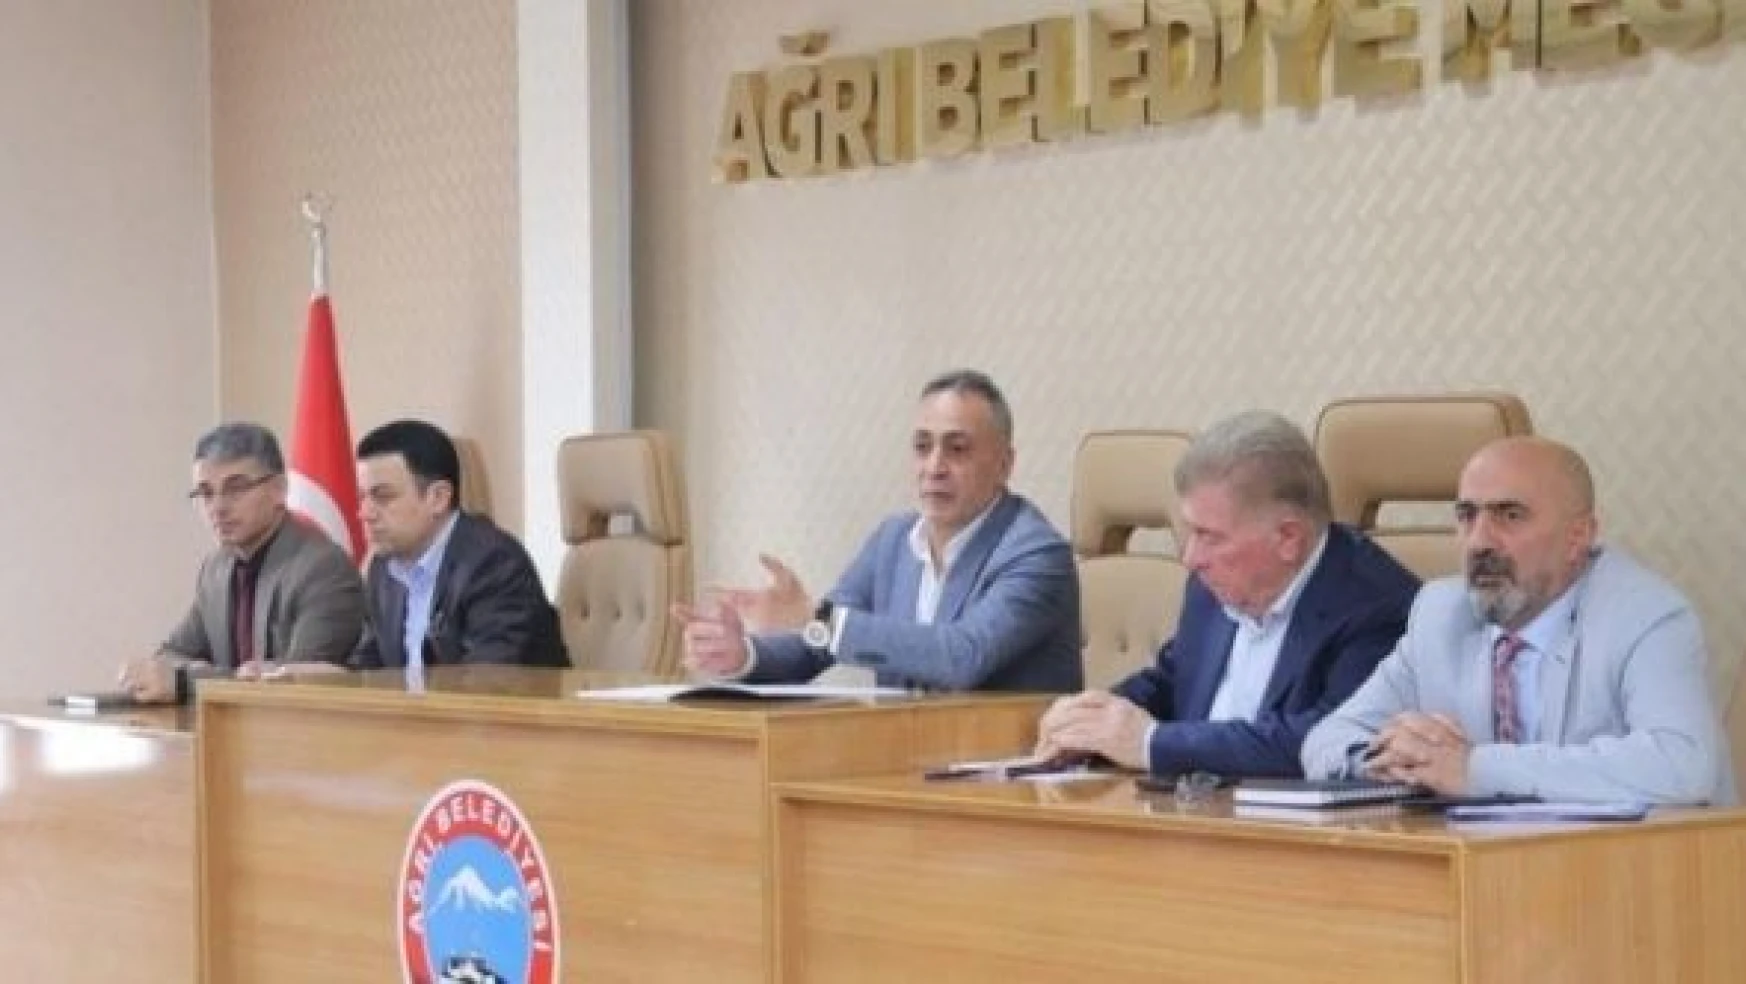 Ağrı'nın yeni Belediye Başkanı, ilk Meclis toplantısını yaptı